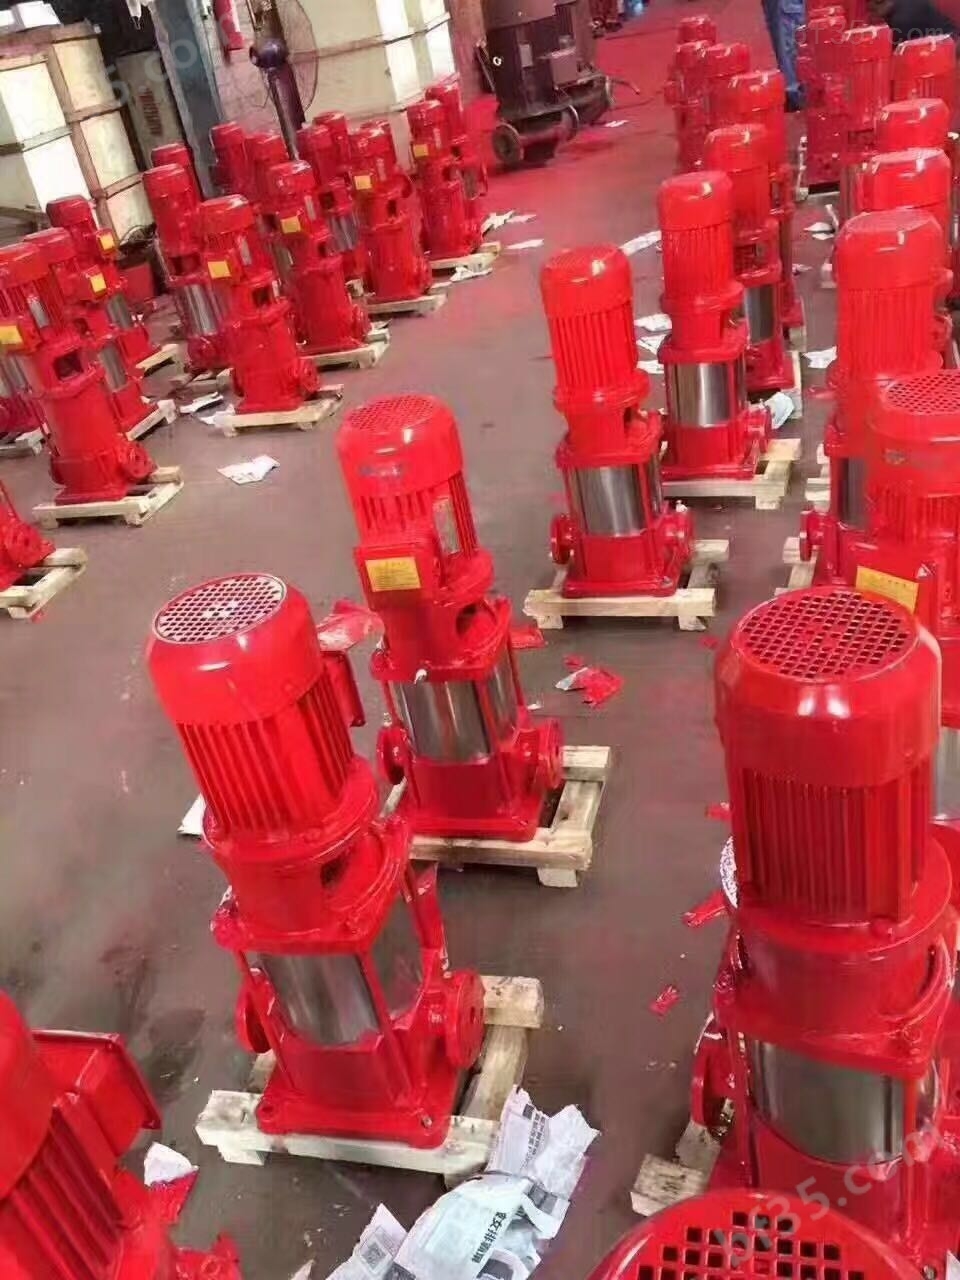 立式单级消防泵组